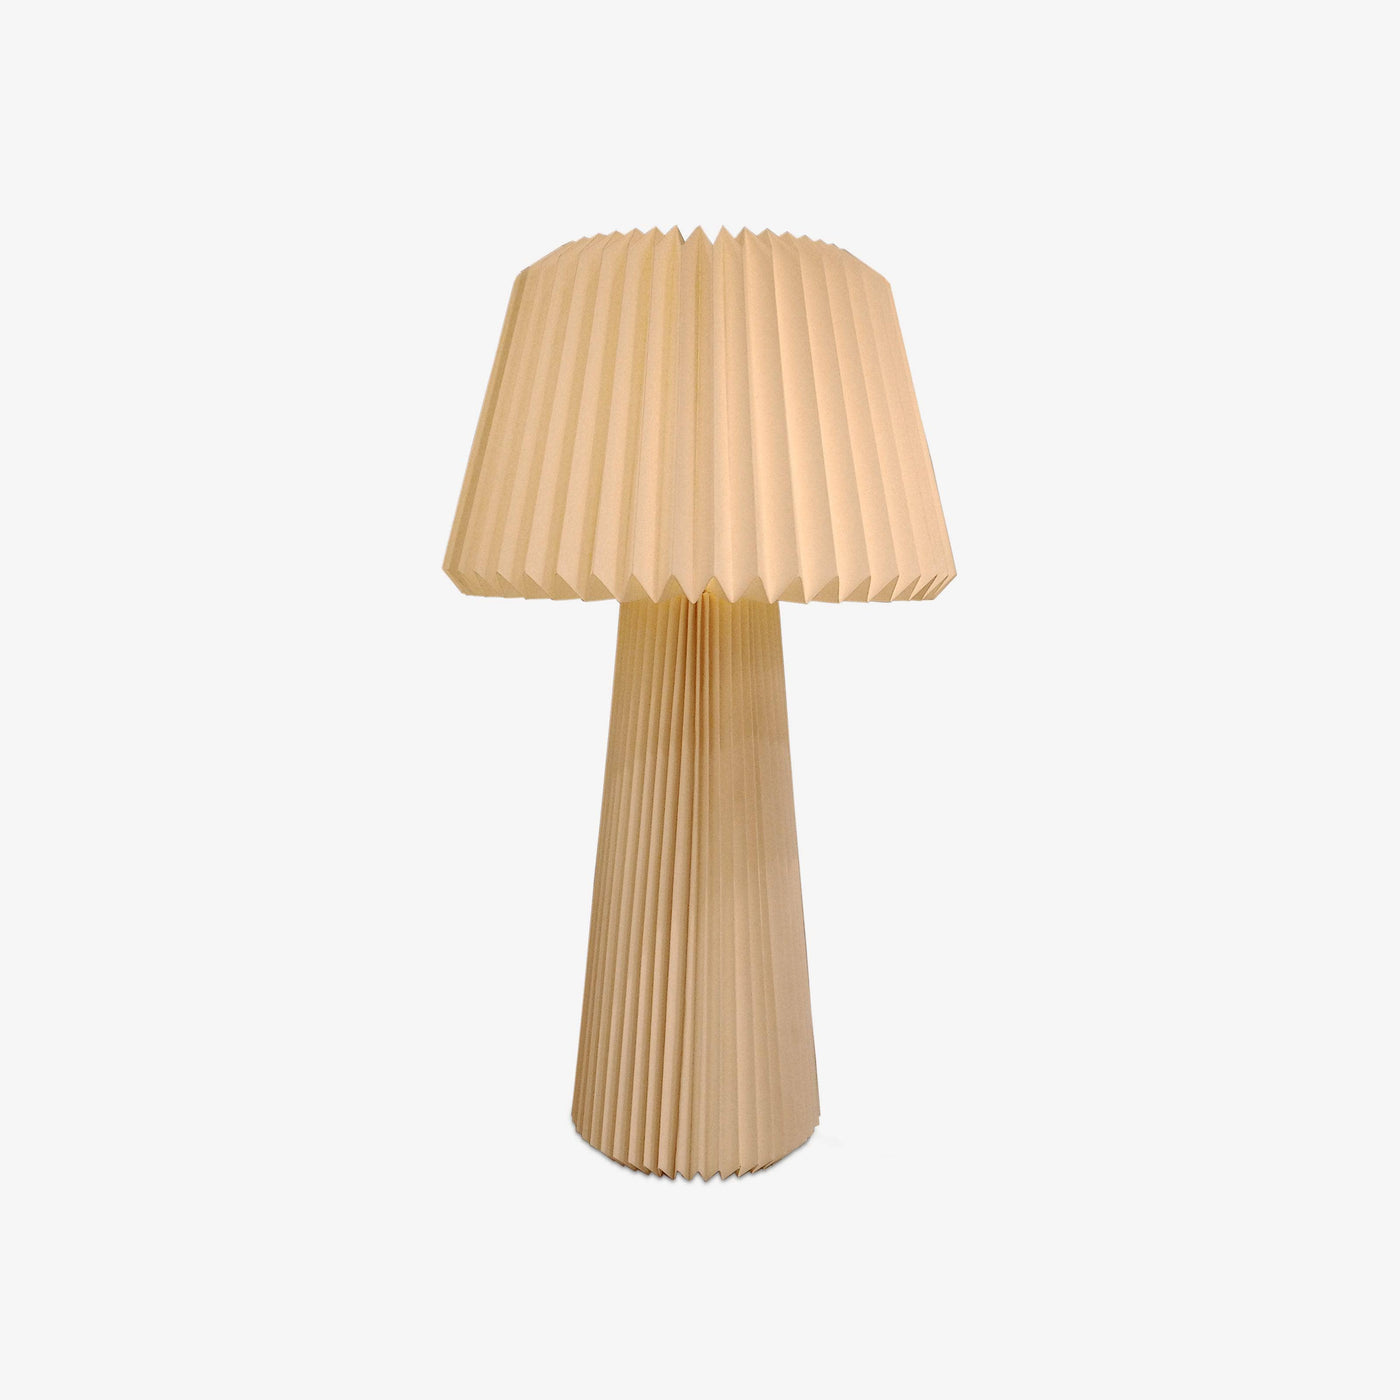 Taka Paper Floor Lamp, Natural Floor Lamps sazy.com